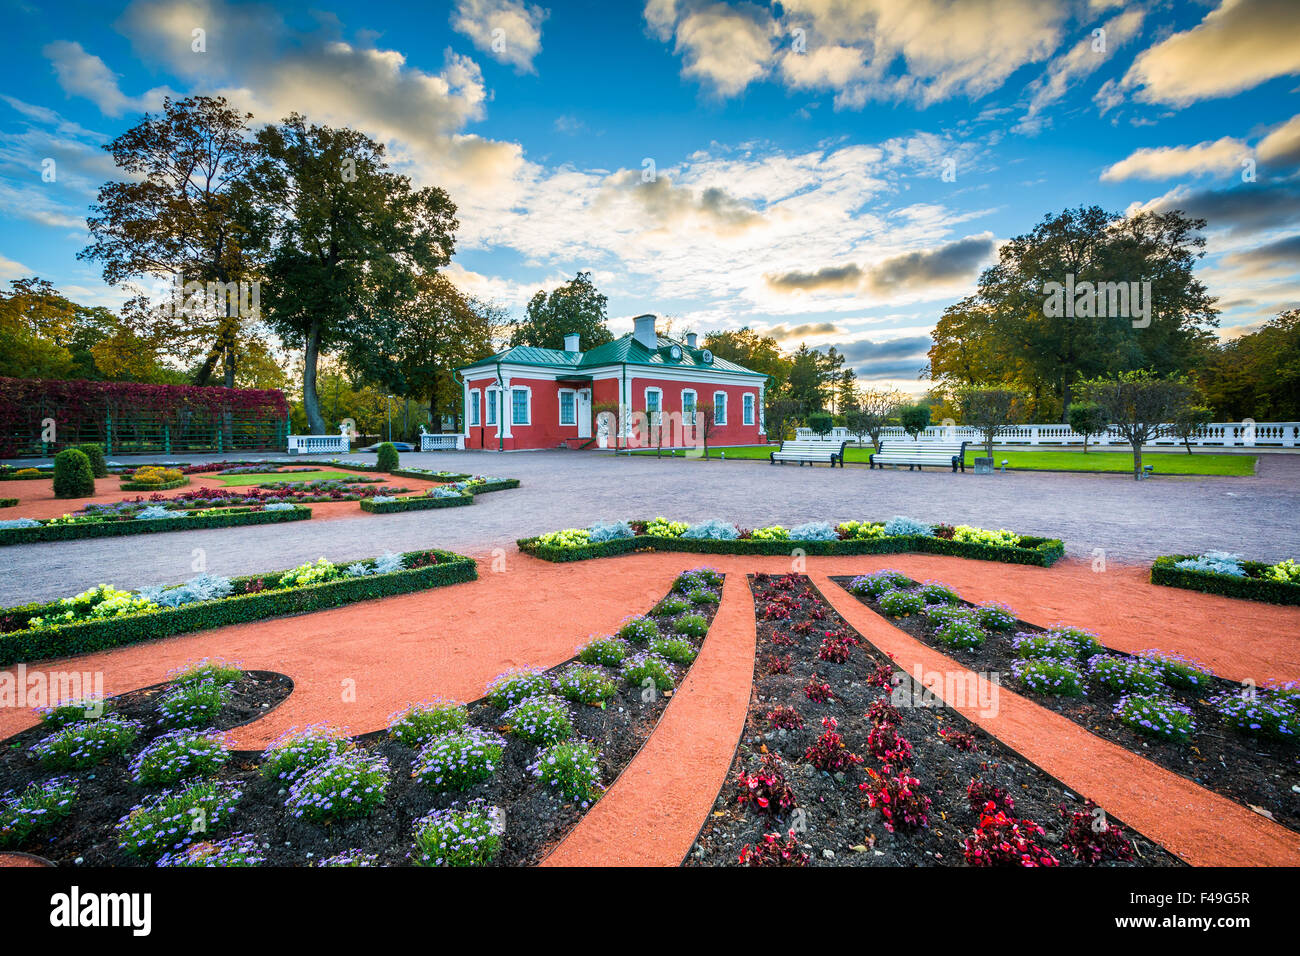 Gardens outside Kadriorg Palace at sunset, at Kadrioru Park, in Tallinn, Estonia. Stock Photo